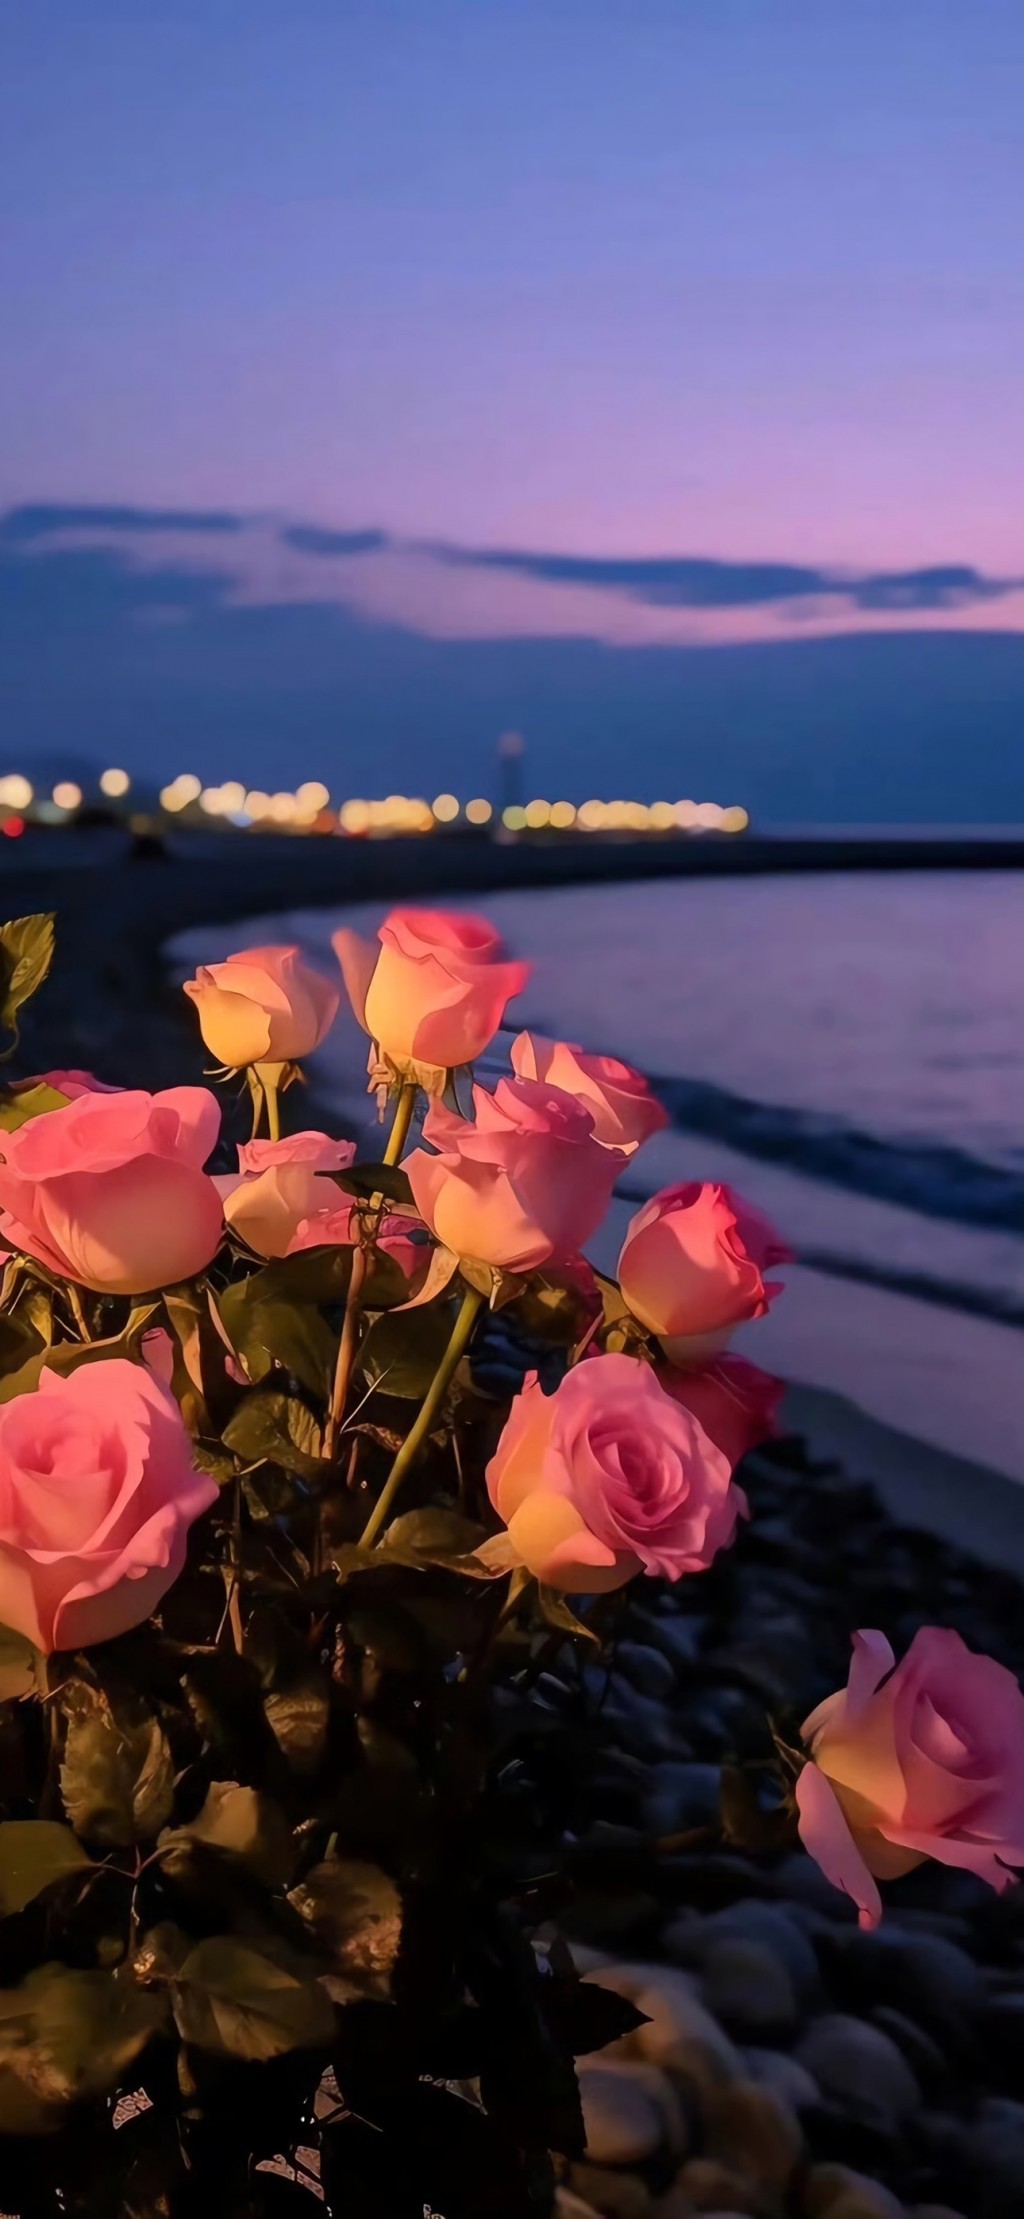 浪漫玫瑰花风景手机壁纸